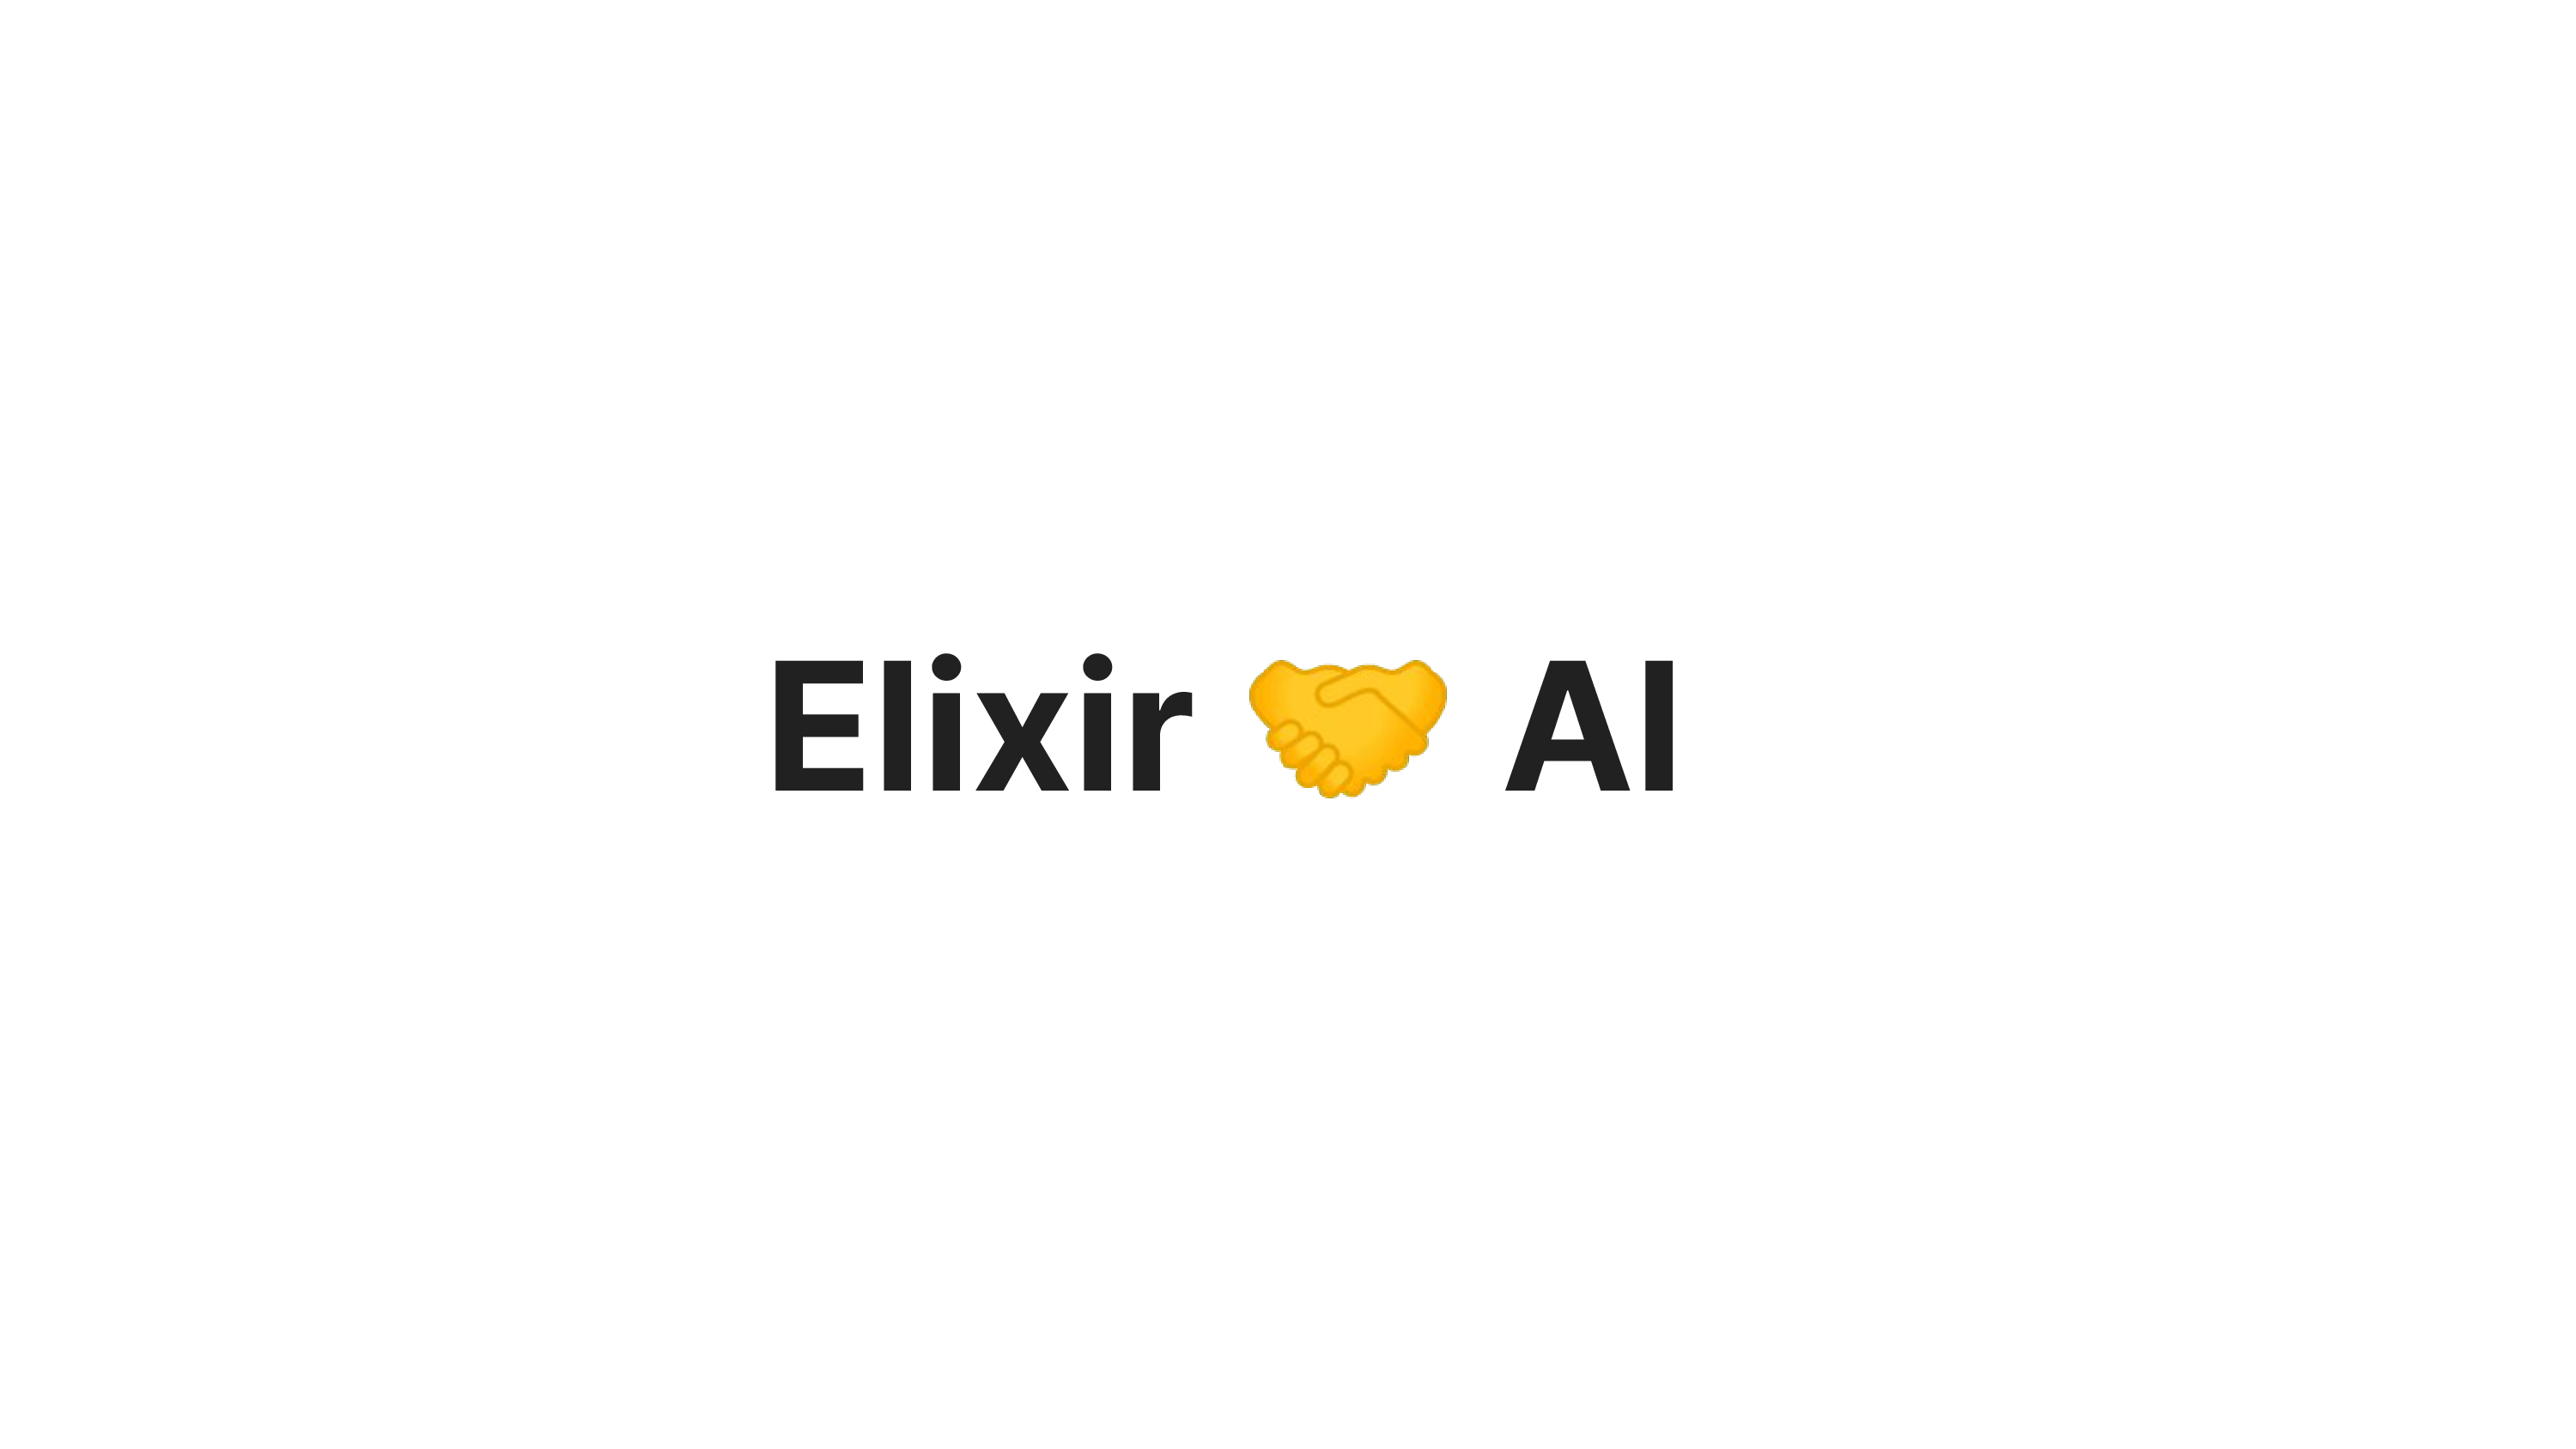 Elixir + Al
